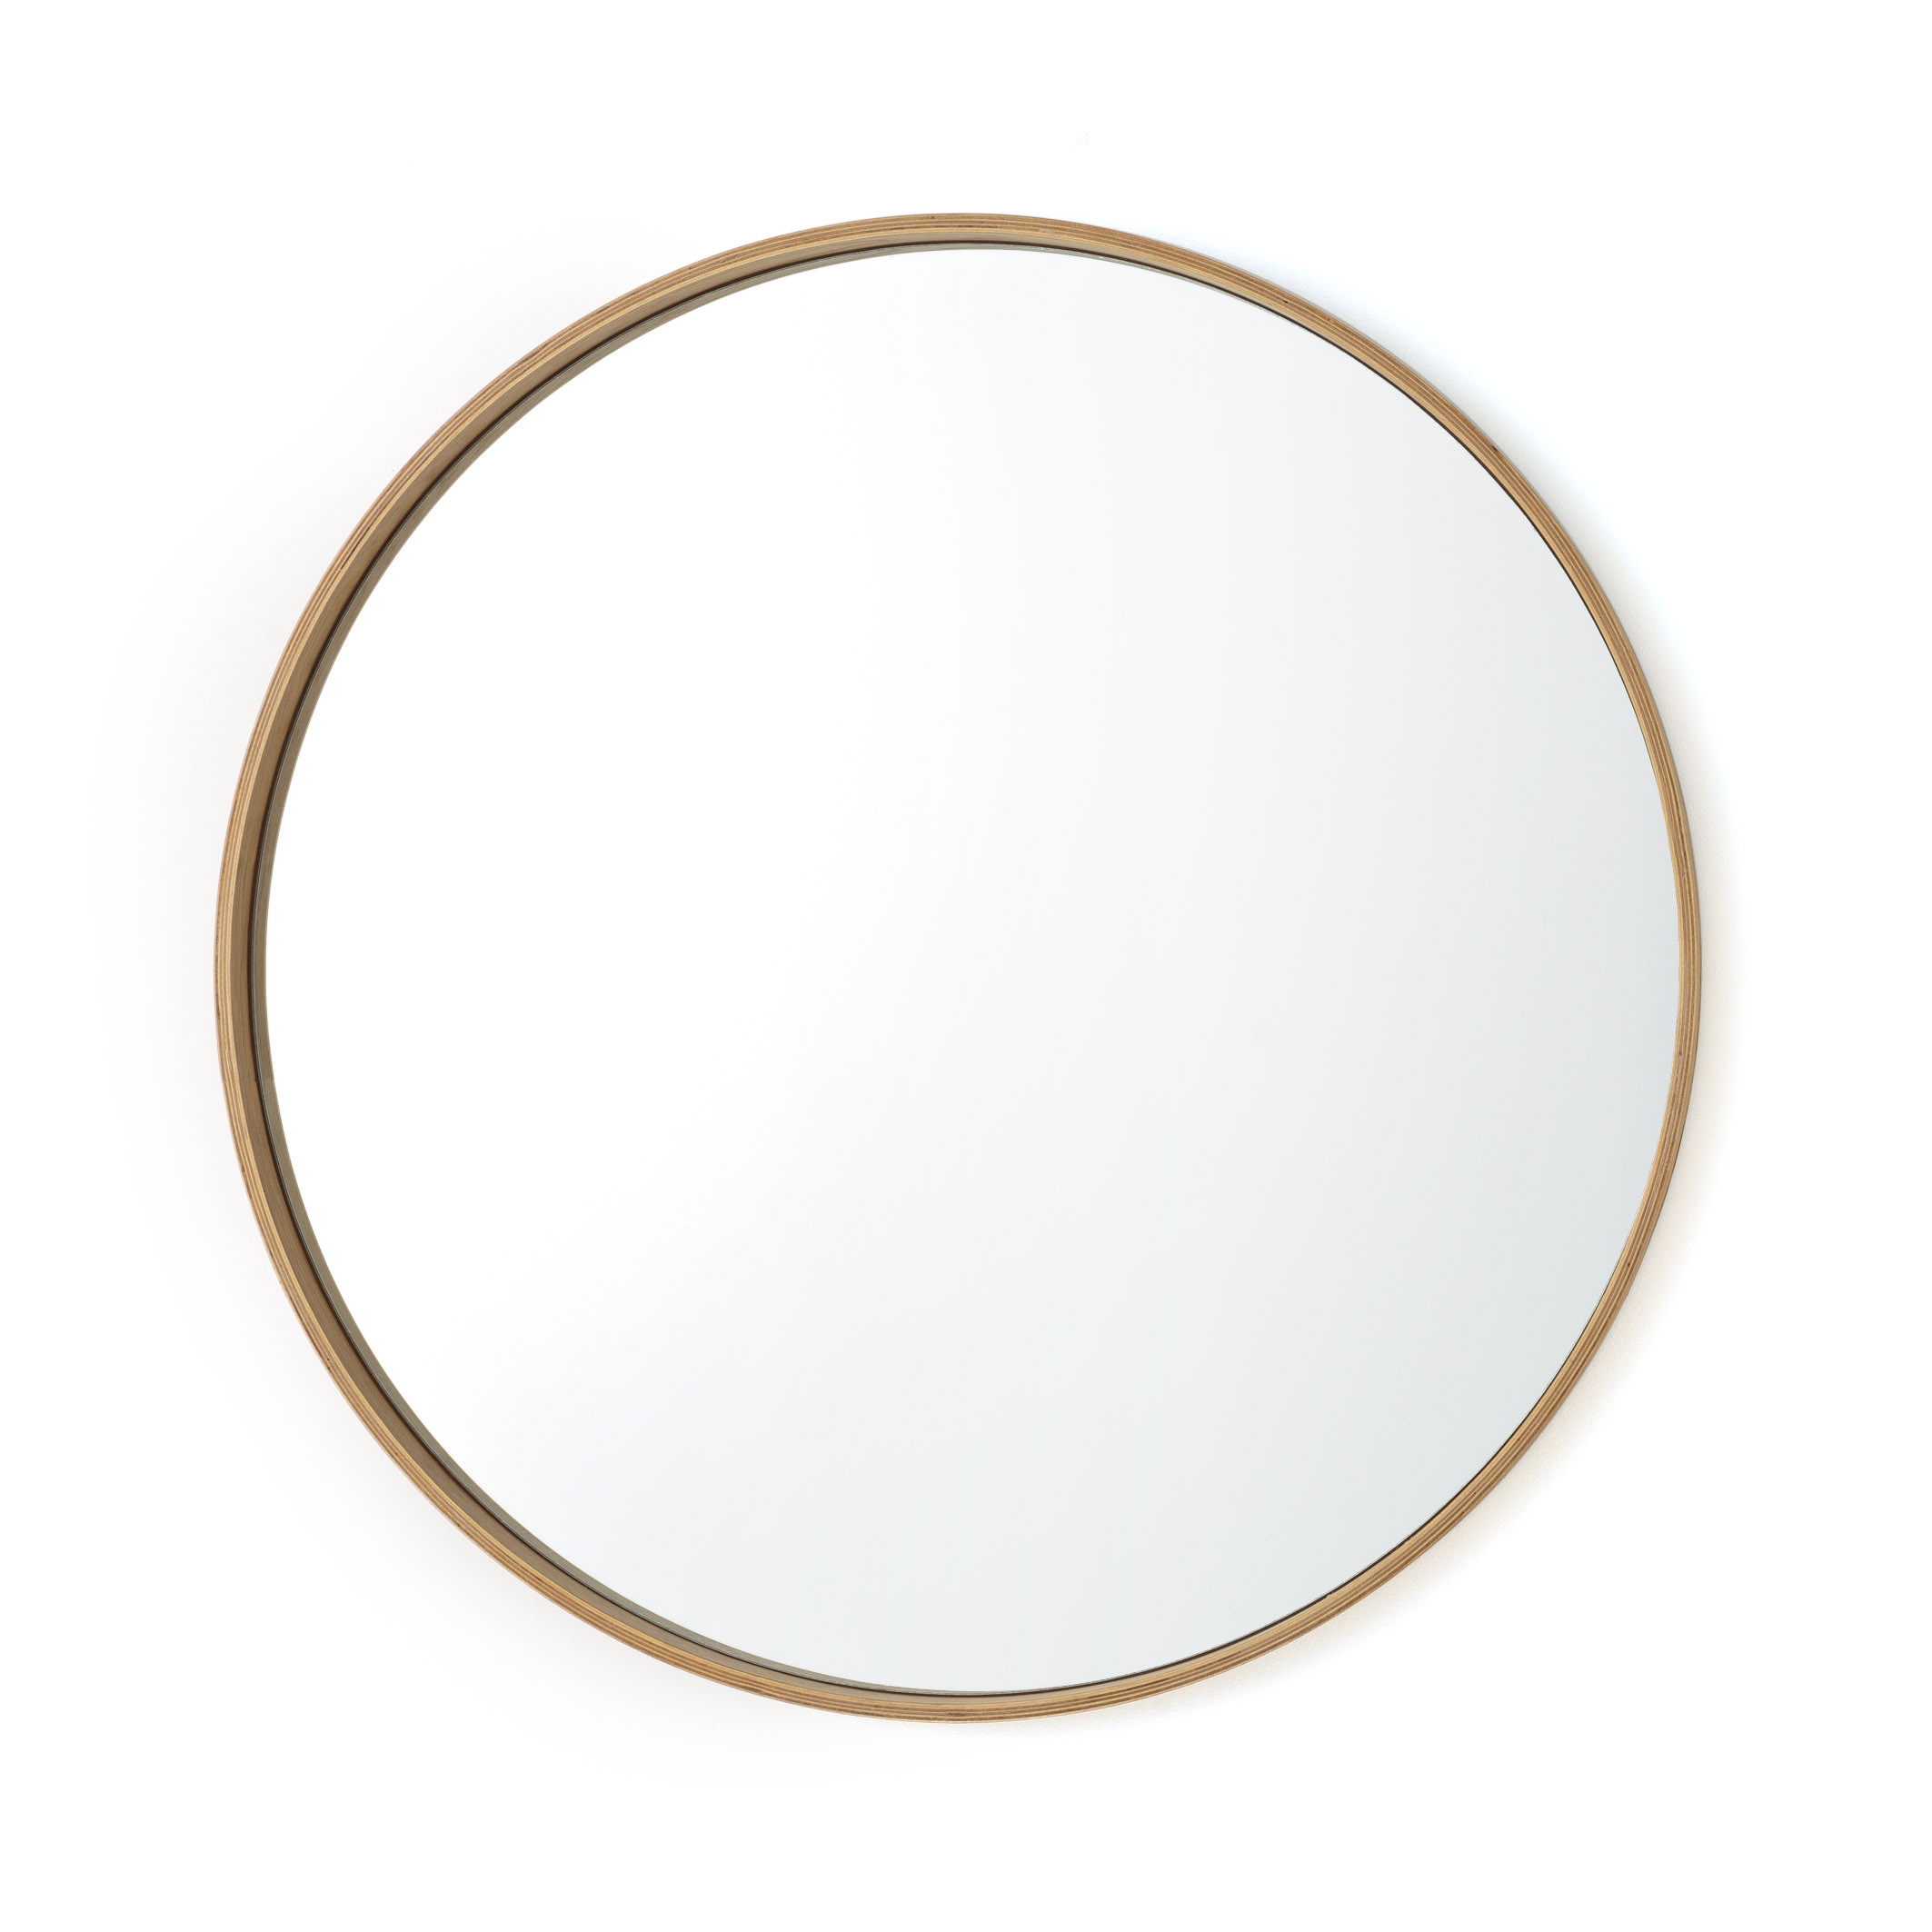 Un Miroir Rond A Un Diametre De 95 Cm Miroir rond chêne ø100 cm, alaria chêne clair La Redoute Interieurs | La  Redoute